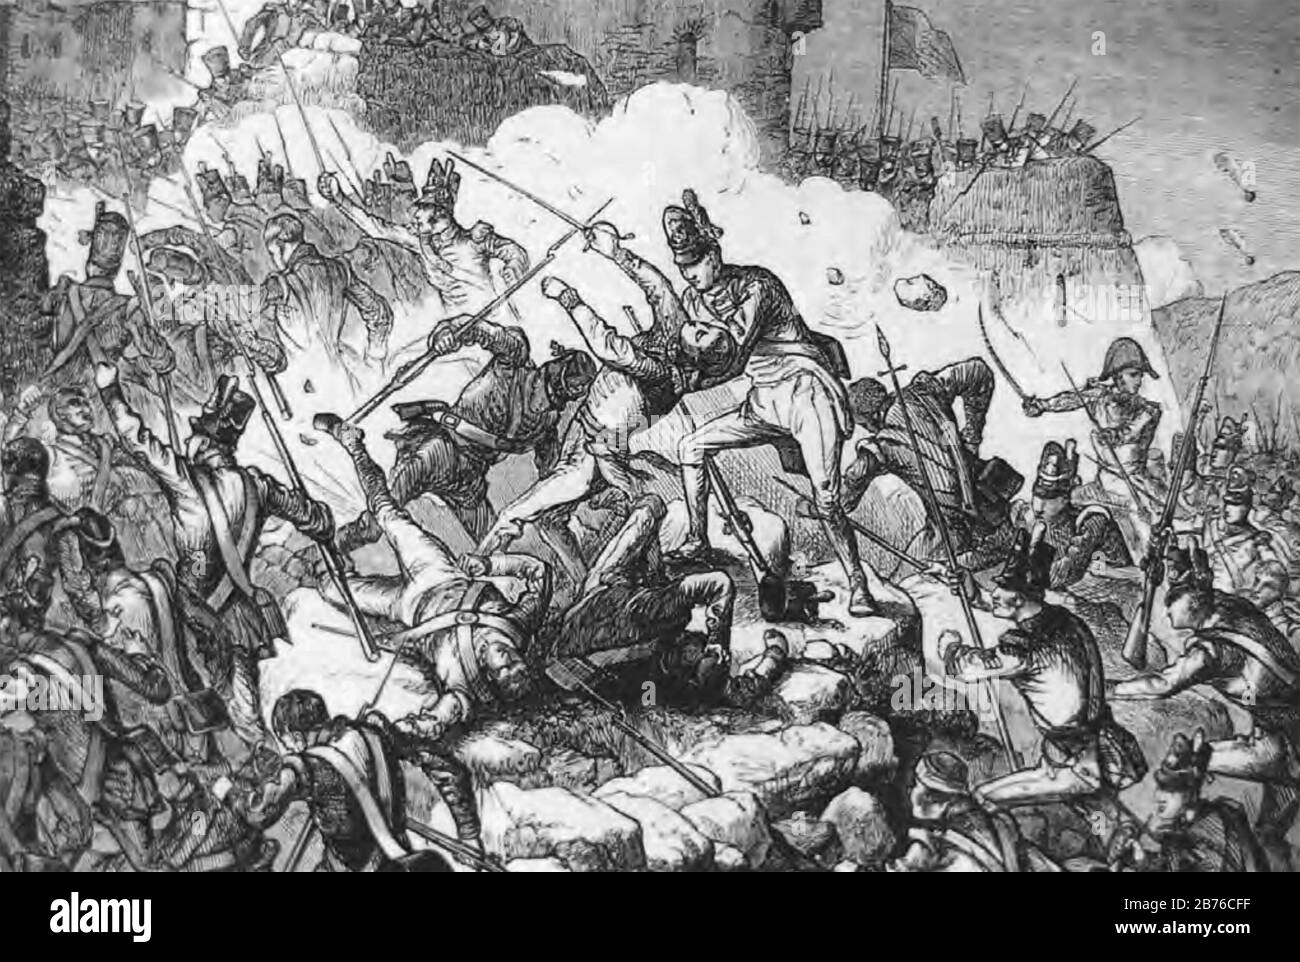 BELAGERUNG VON CIUDAD RODRIGO 7. BIS 20. JANUAR 1812. Britische Soldaten stürmen die Festung während des Peninsula-Krieges Stockfoto